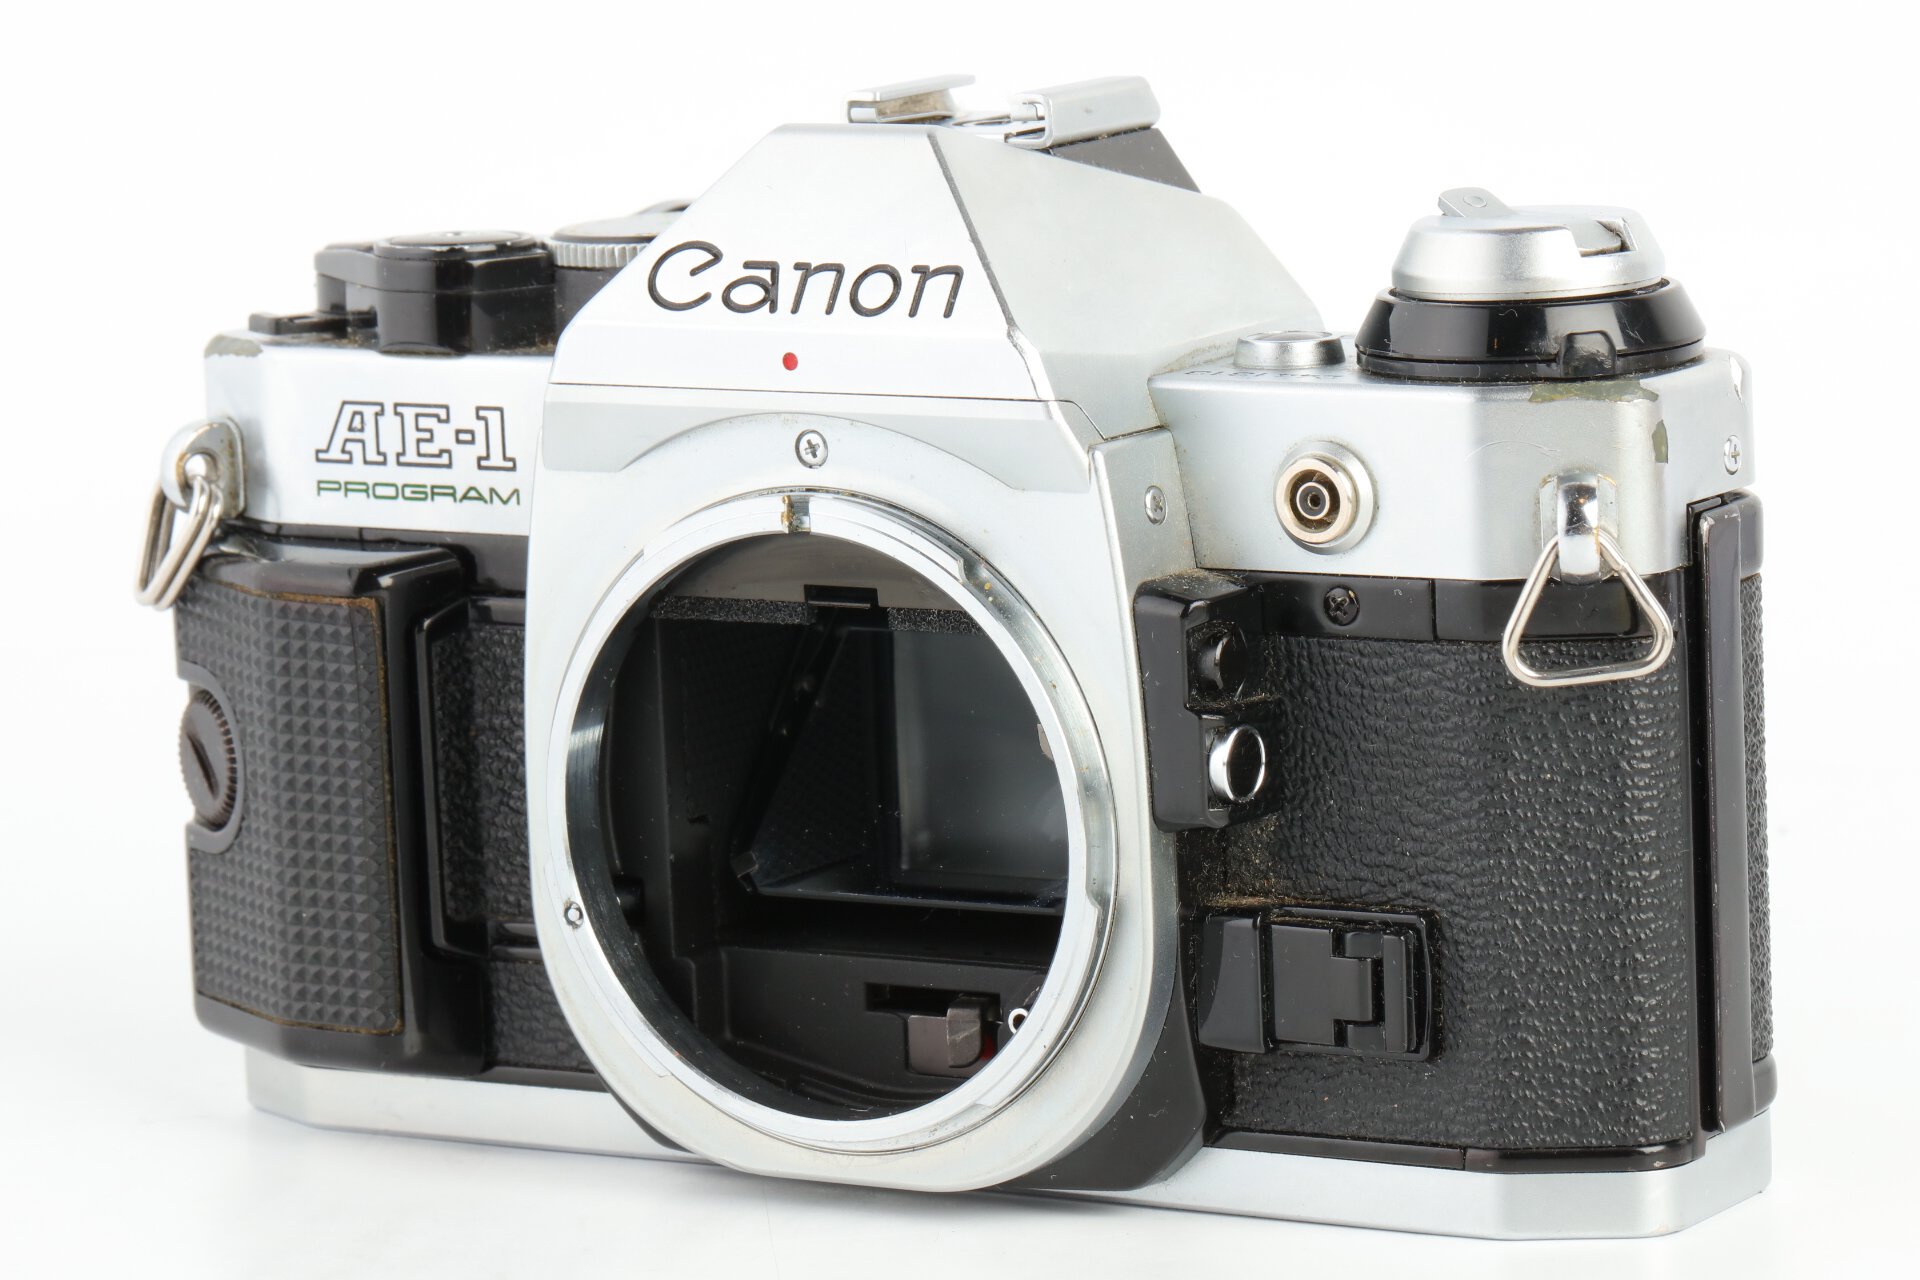 Canon AE-1 Program chrom